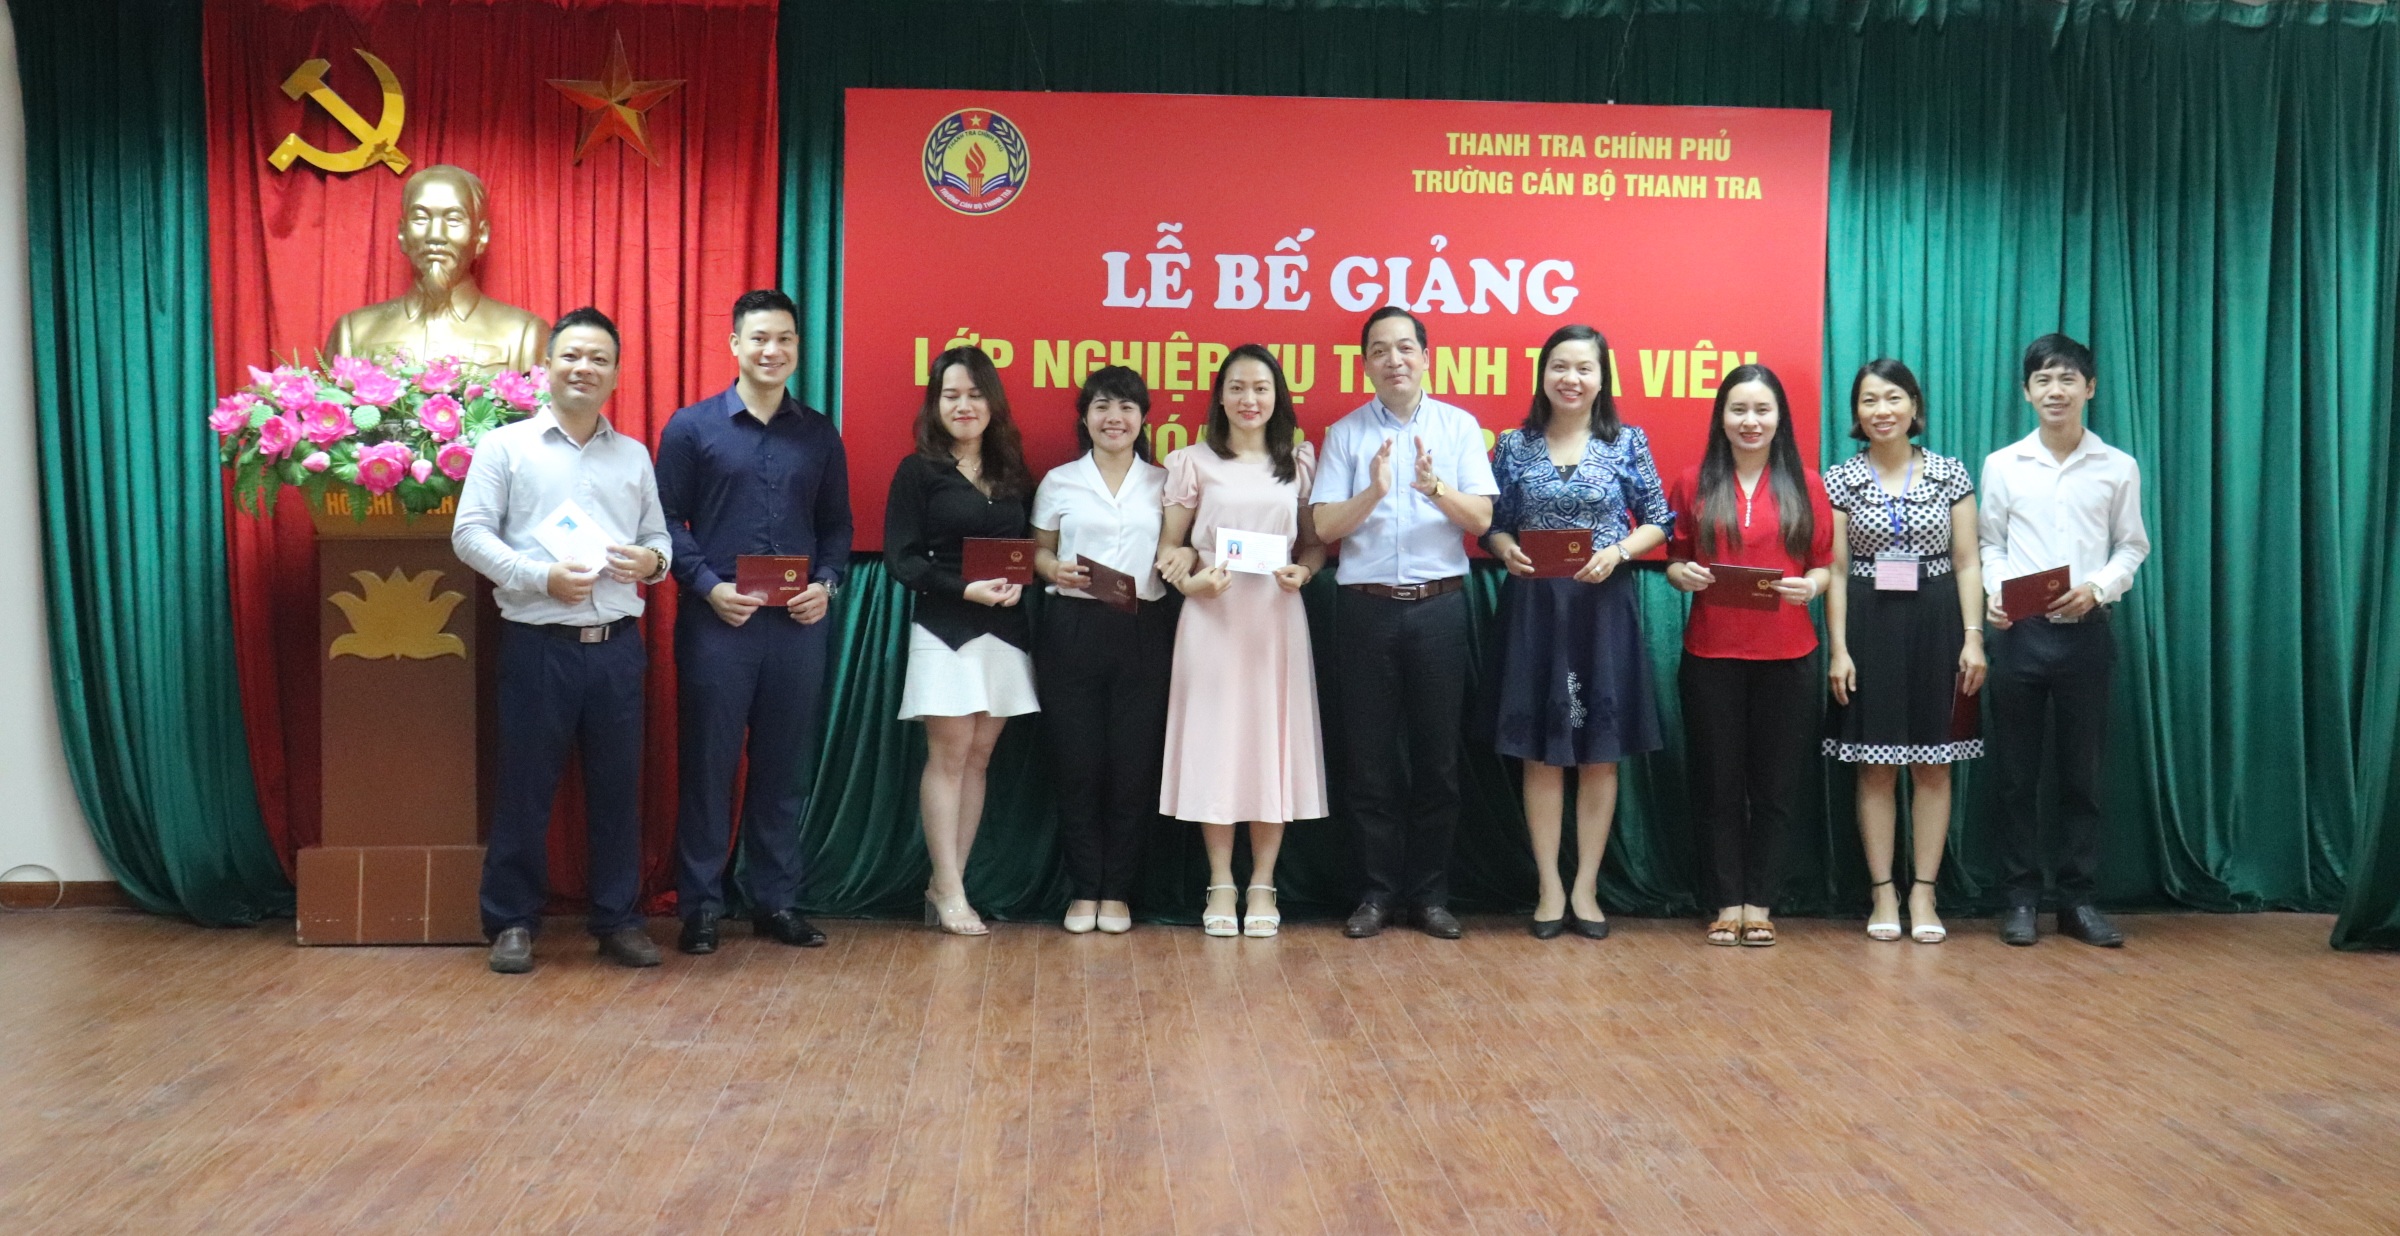 TS Nguyễn Huy Hoàng TTVCC Phó hiệu trưởng trg CBTT trao chứng chỉ cho học viên